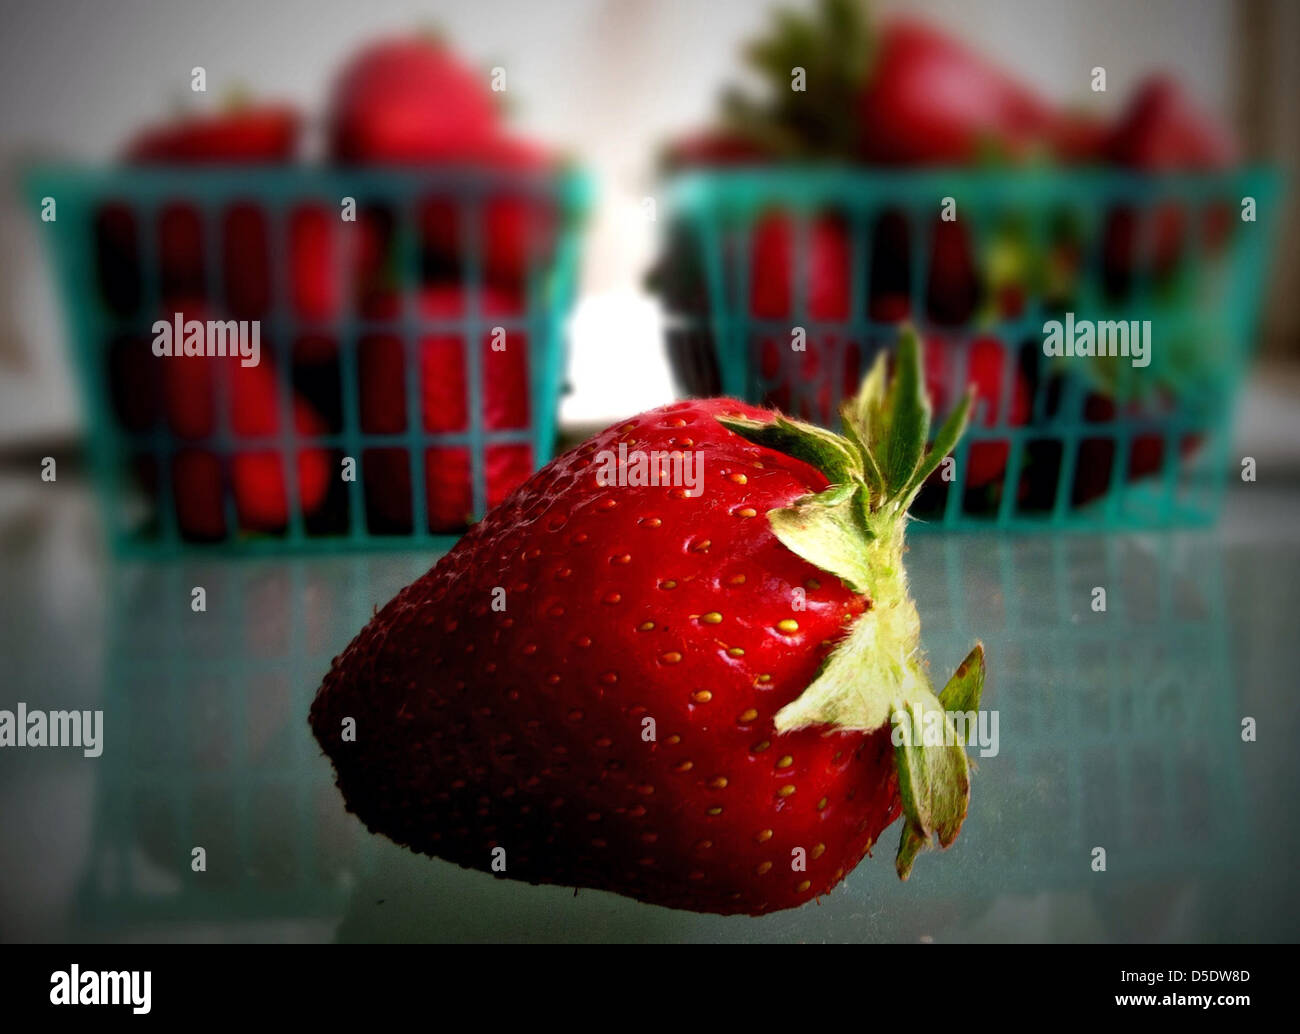 29 mars 2013 - Los Angeles, Californie, États-Unis - marché des producteurs de fraises fraîches et de Oxnard, California Fruit Farm (crédit Image : © Jonathan Alcorn/ZUMAPRESS.com) Banque D'Images